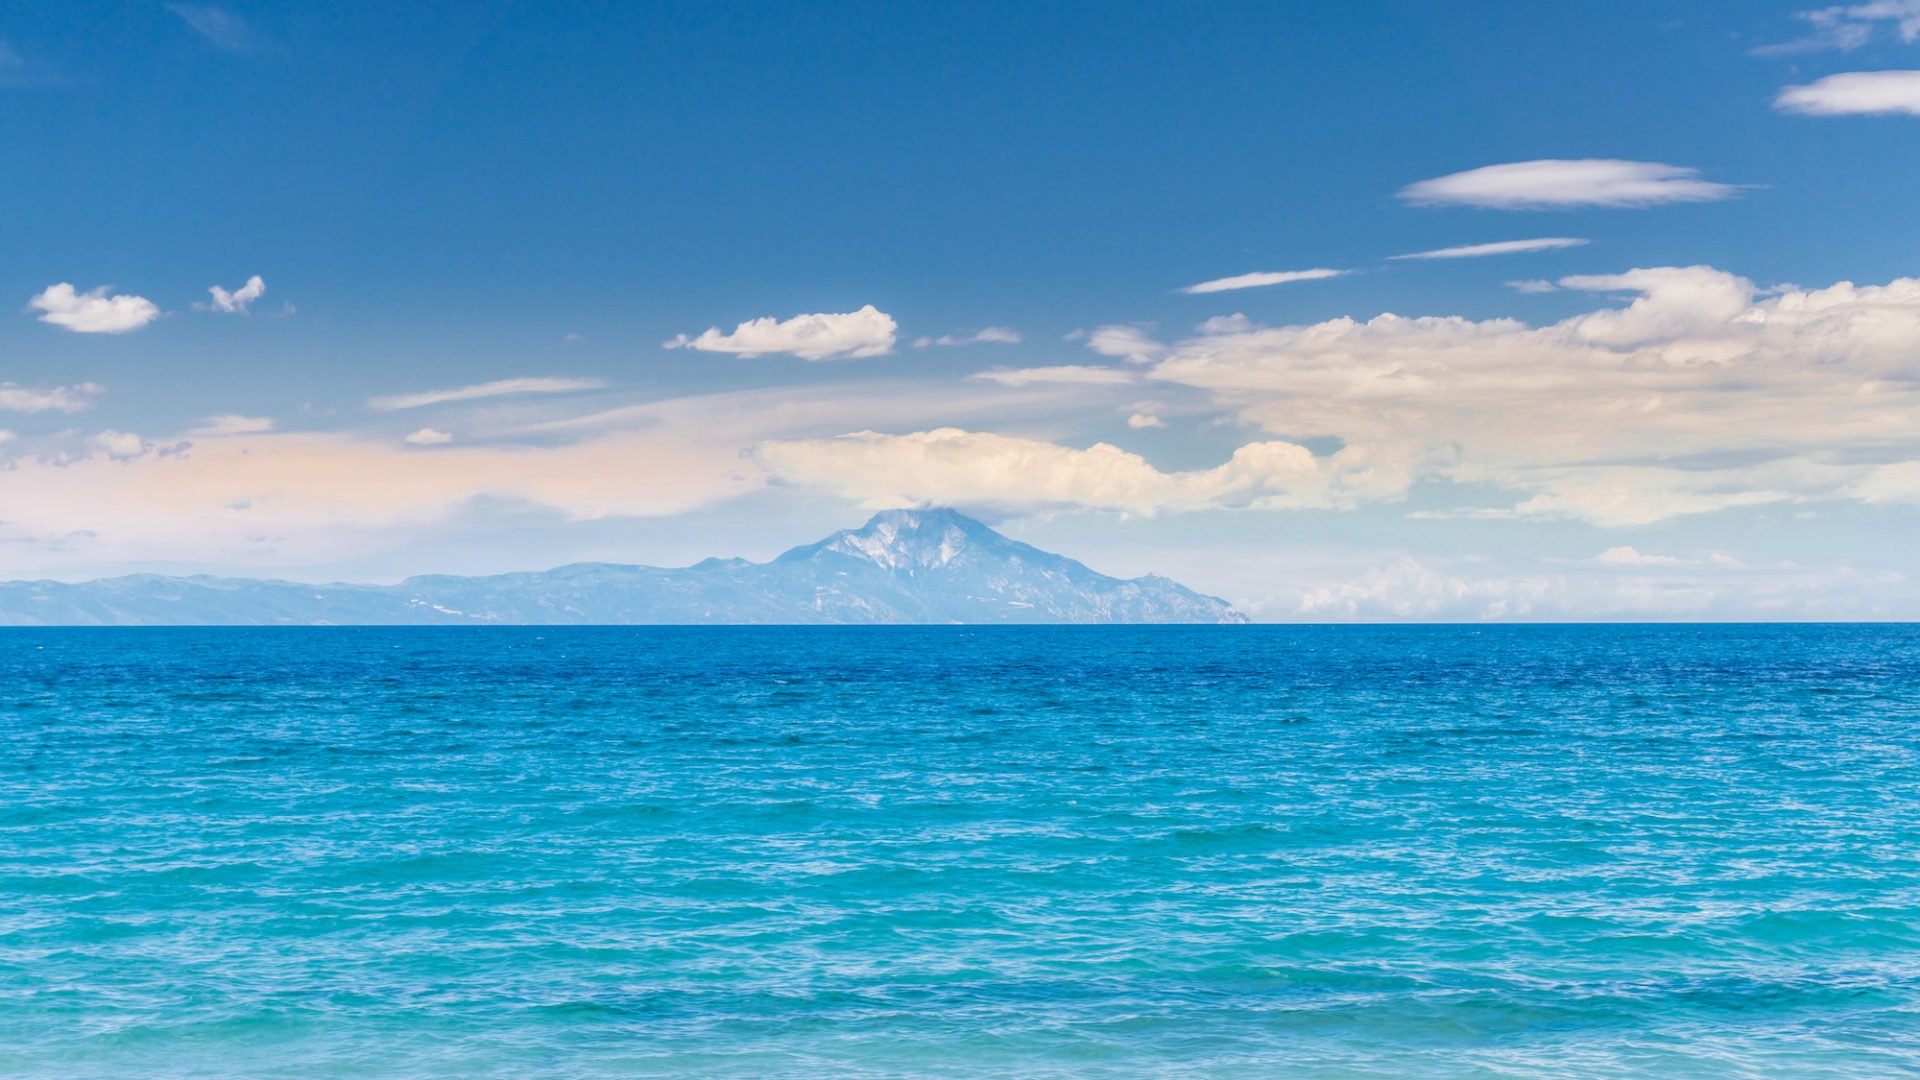 Griechenland, Chalkidiki, Agios Nikolaos, Blick auf Berg Athos